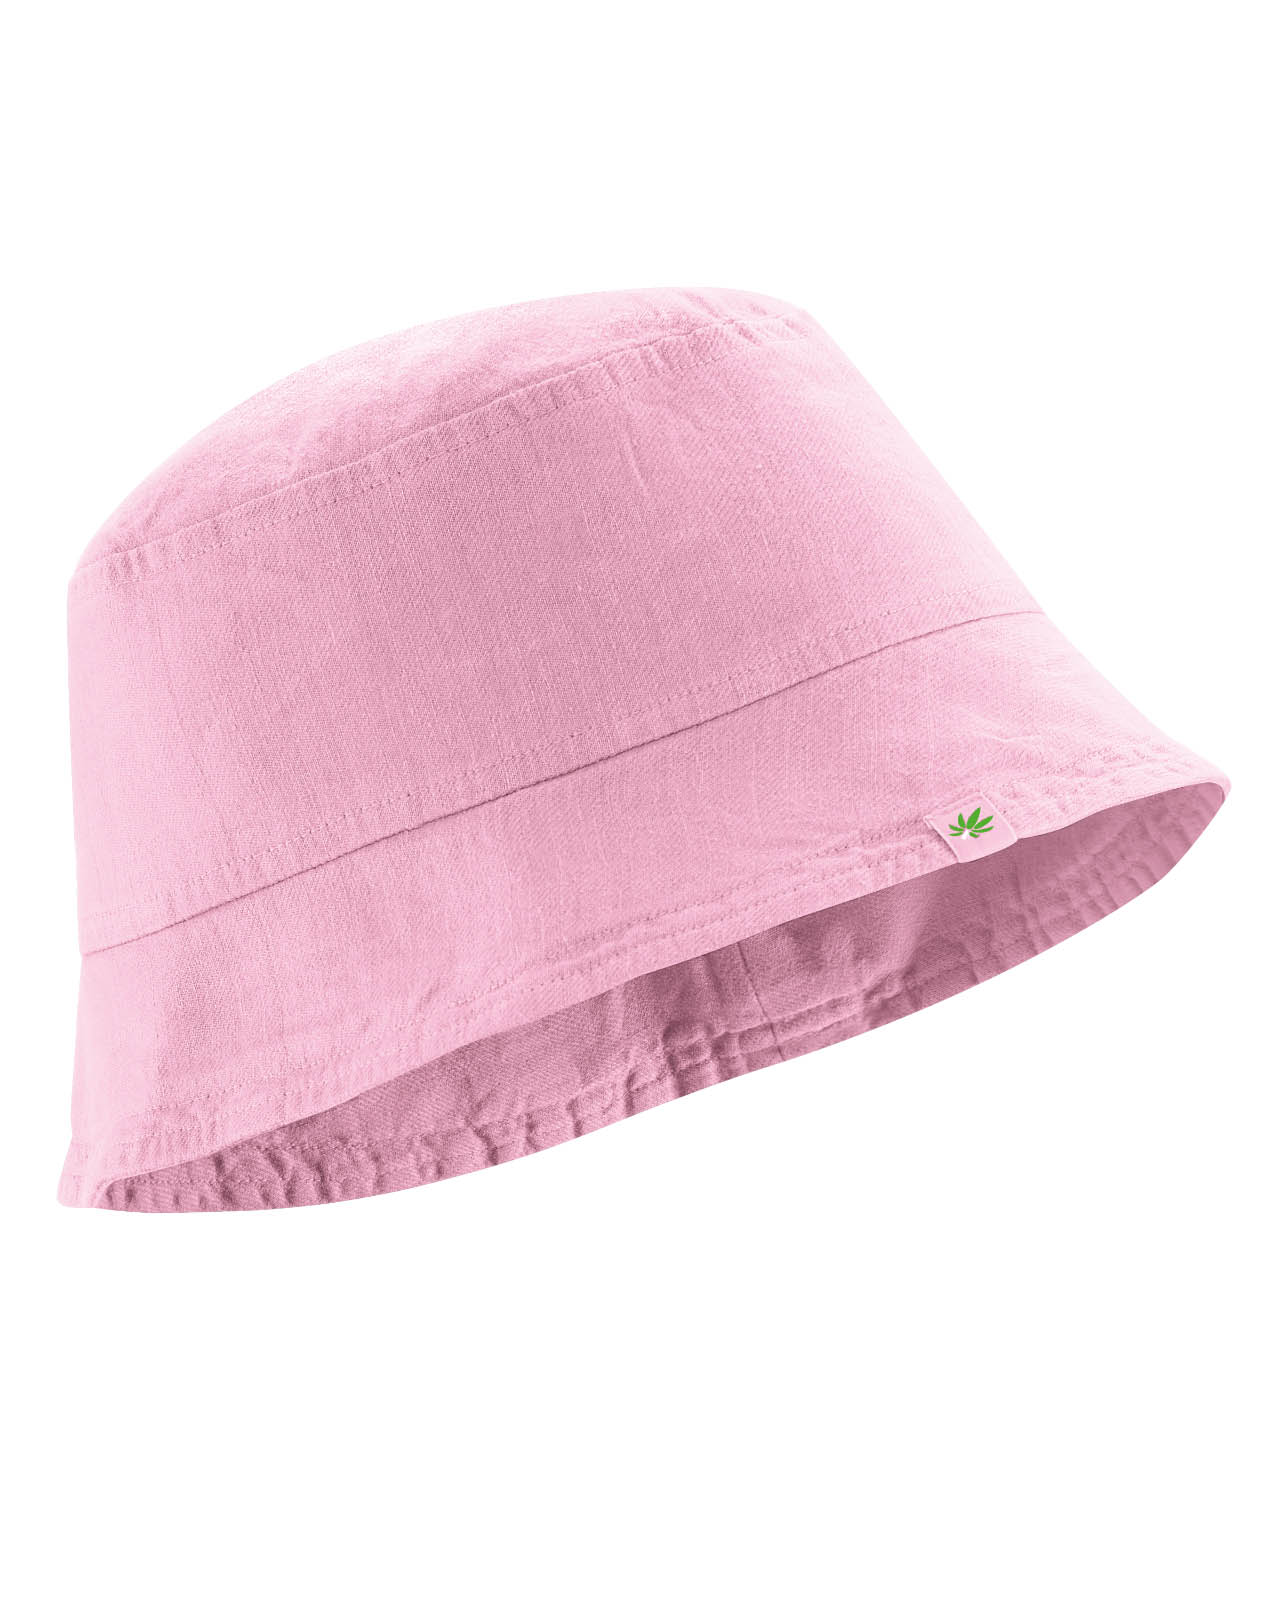 chapeau tissé femme DH408_rose